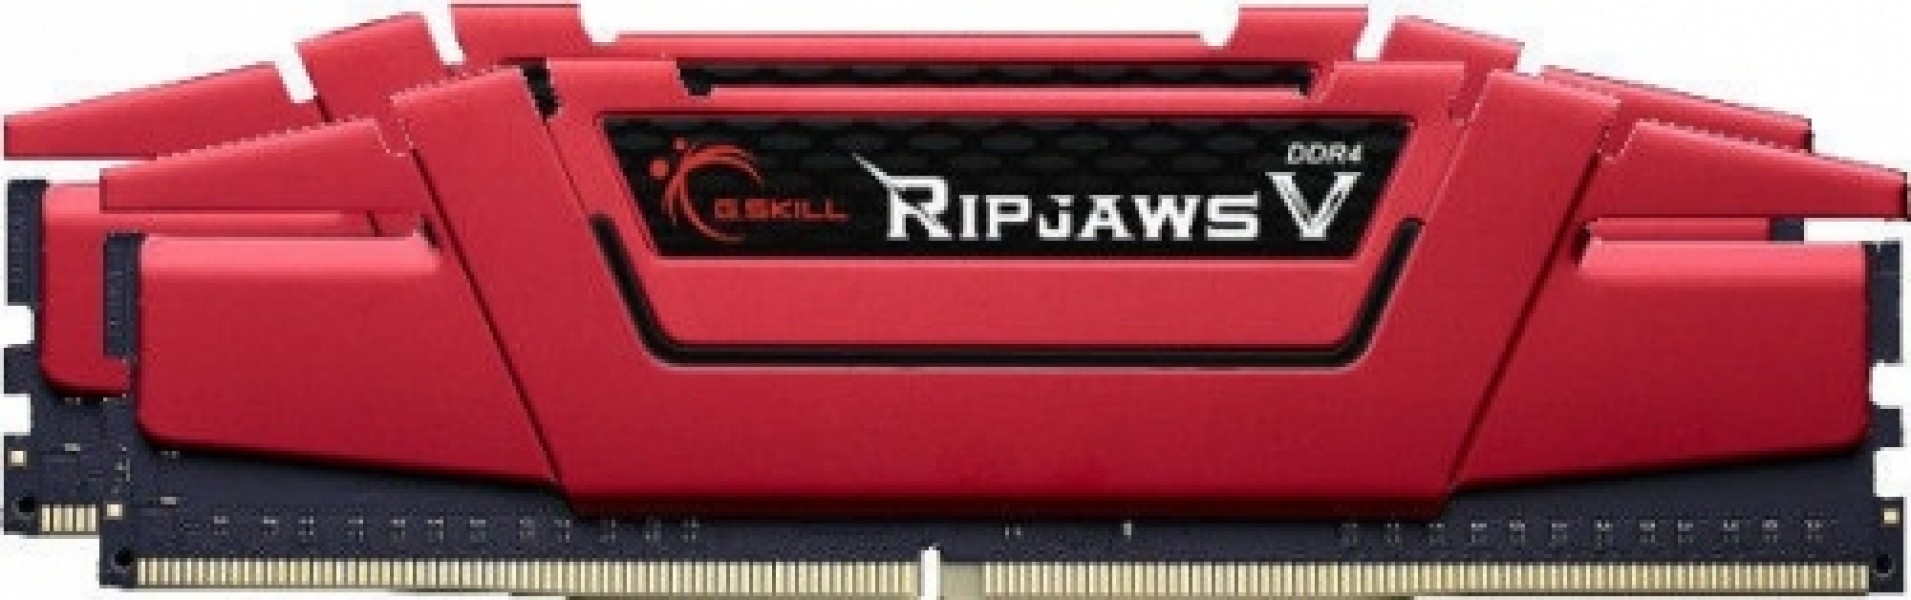 G.SKILL RipjawsV 16GB 3000MHz CL15 DDR4 XMP2 KIT OF 2 F4-3000C15D-16GVR